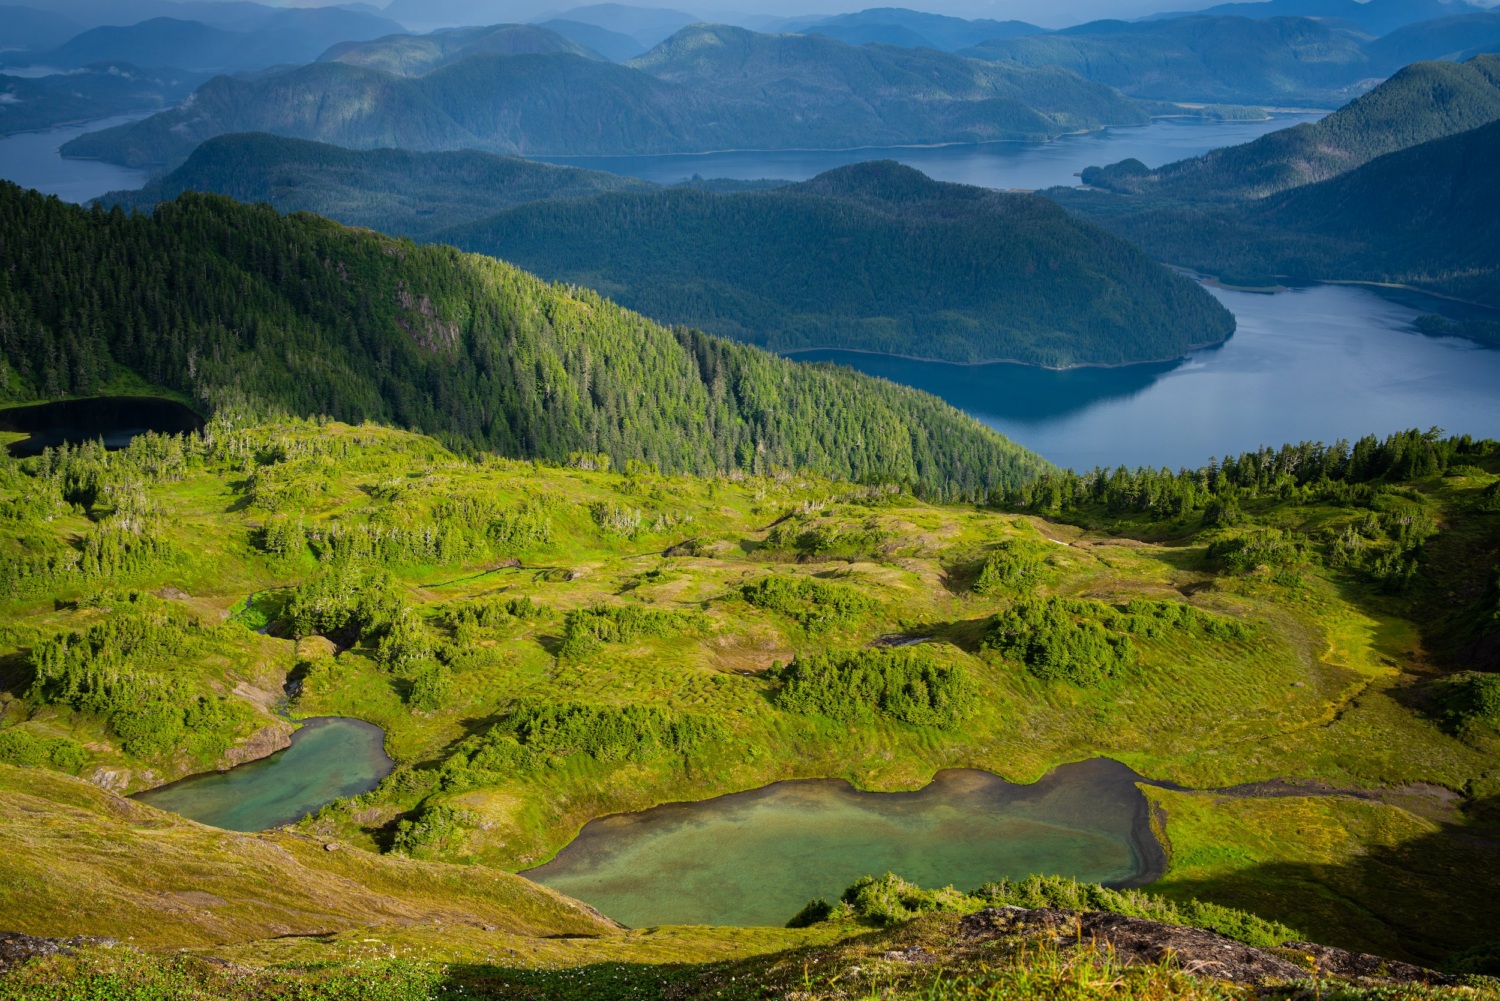 View of alpine lakes on Starrigavan mountain near Sitka, Alaska.